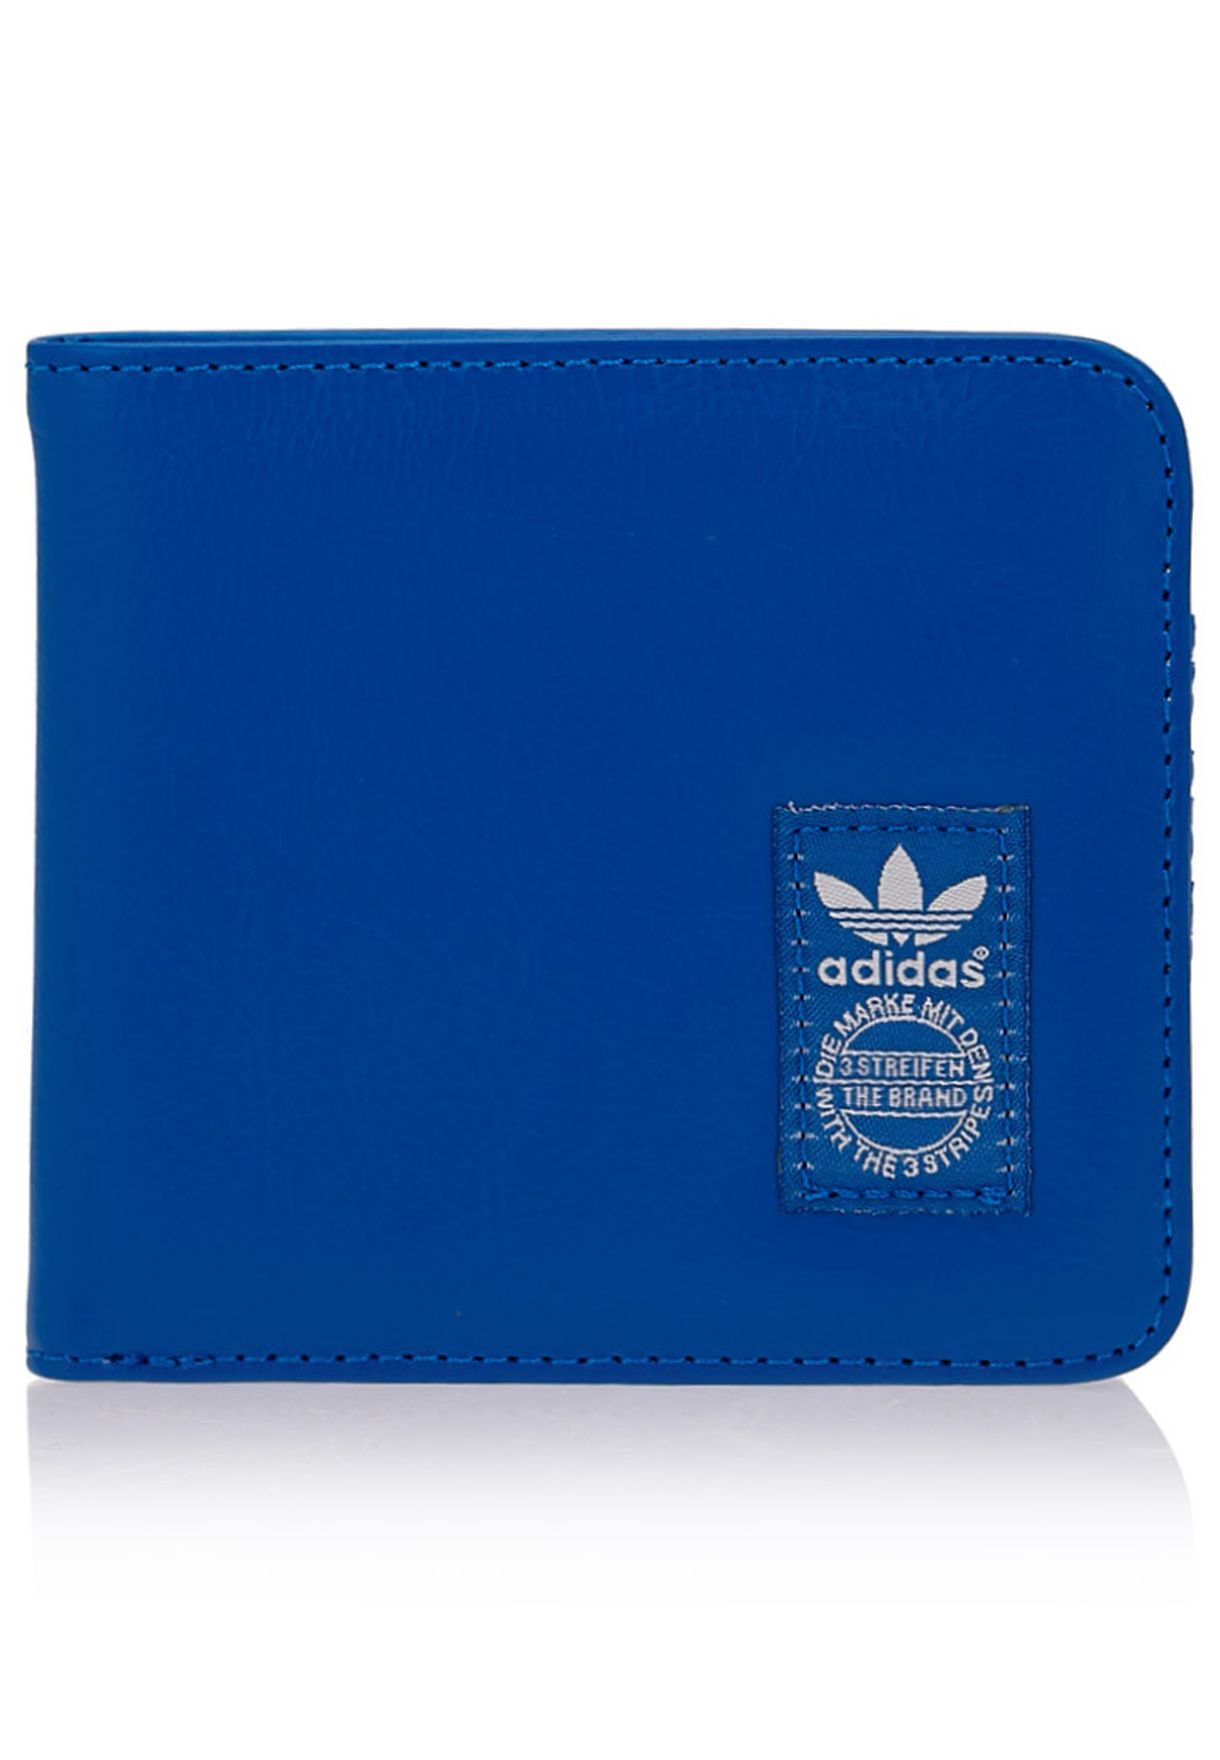 adidas Originals blue AC Classic Wallet 